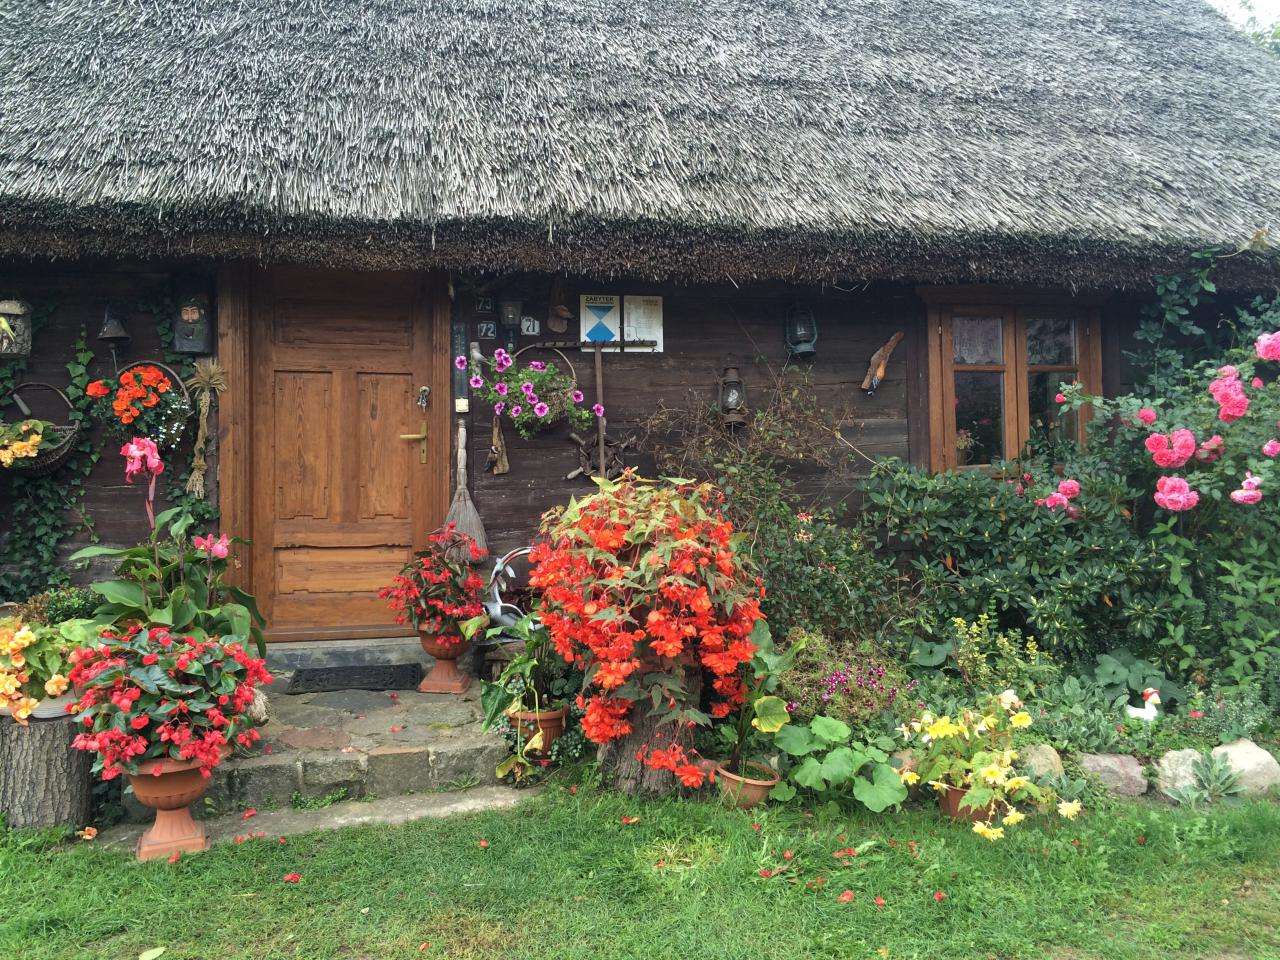 Cottage avec des toits de chau puzzle en ligne